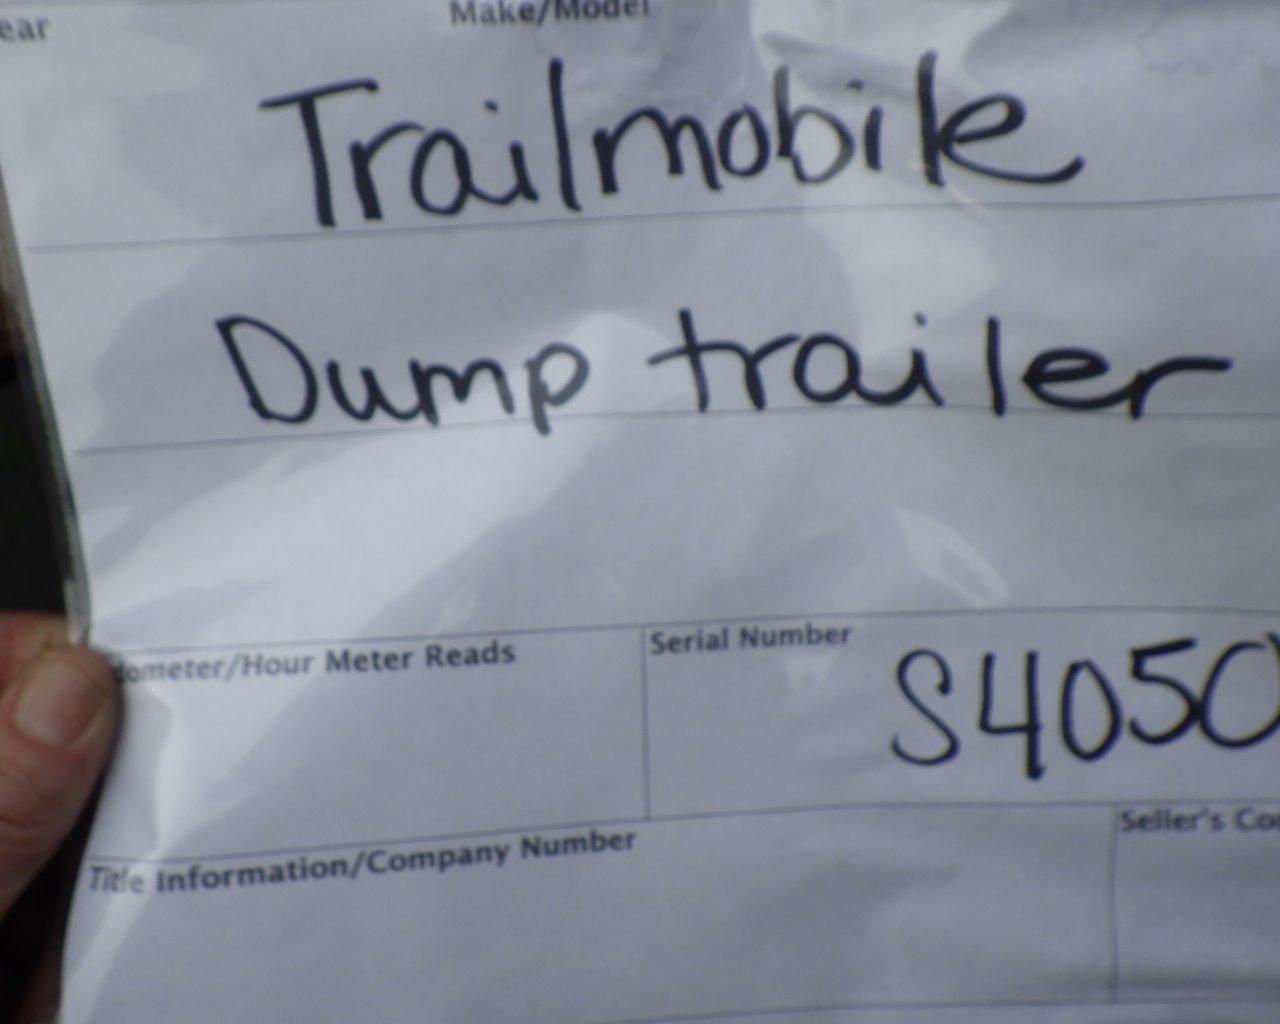 TRAILMOBILE Dump Trailer s/n:S40508